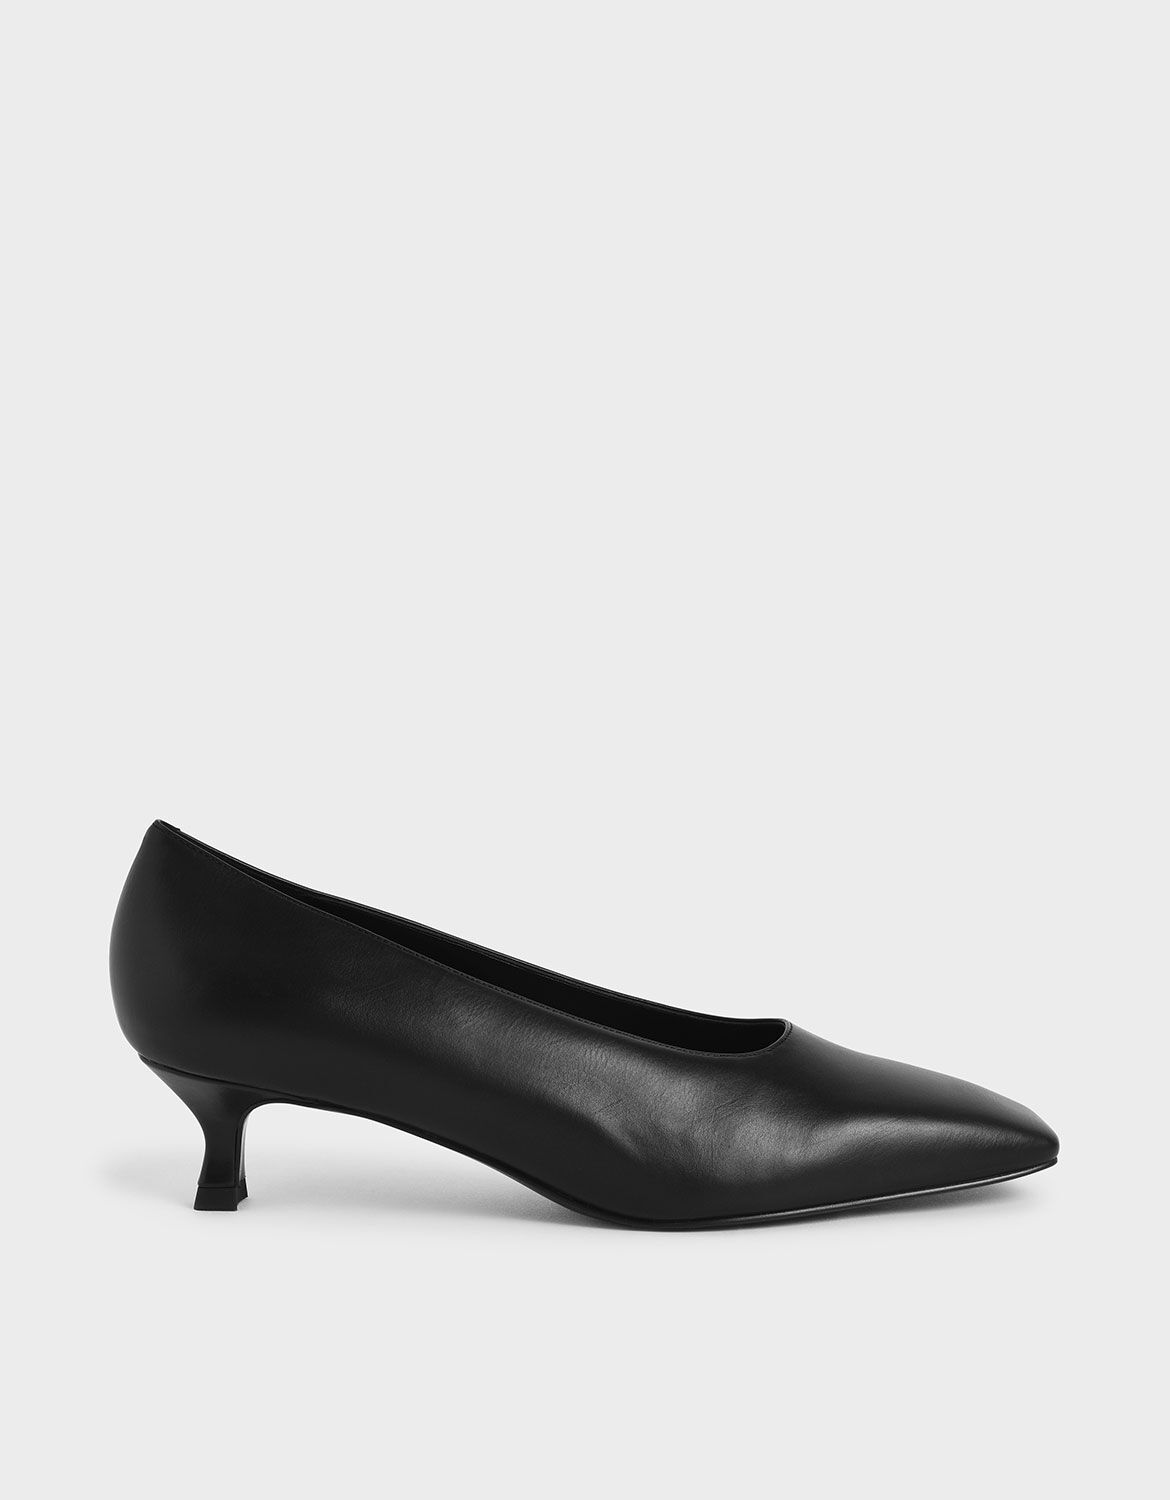 black kitten heel court shoes